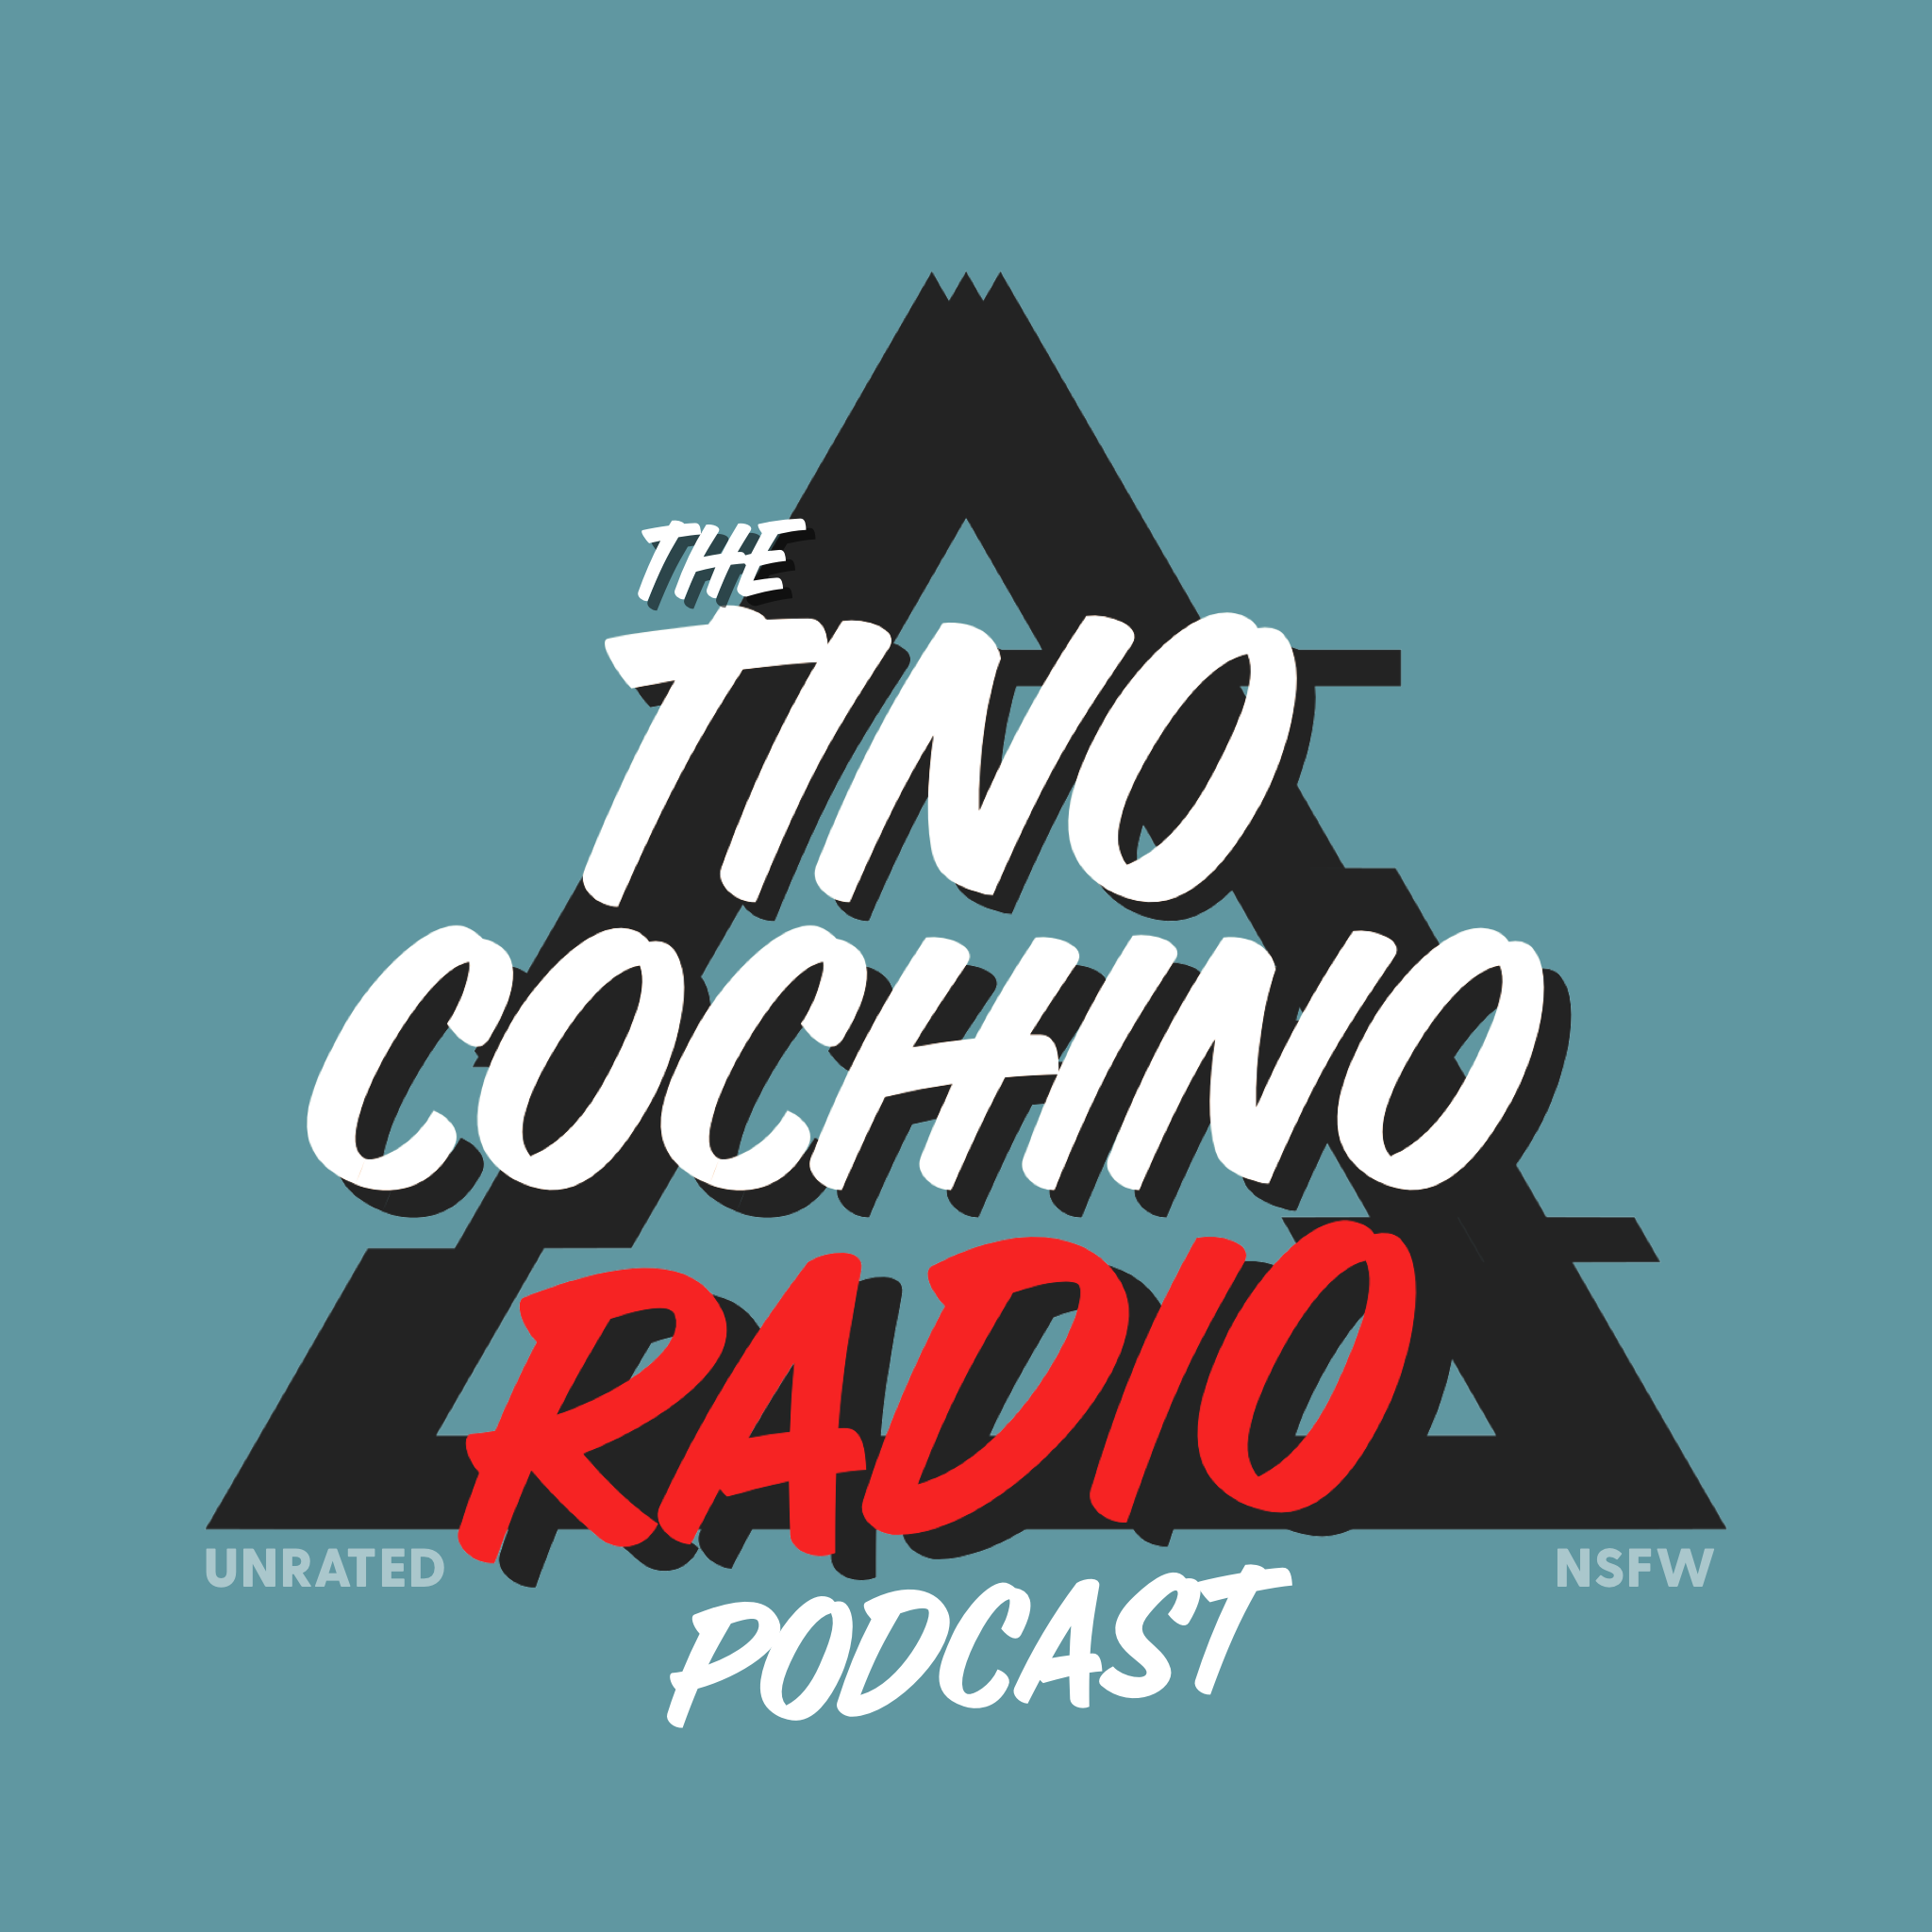 Podcast - Tino Cochino Radio